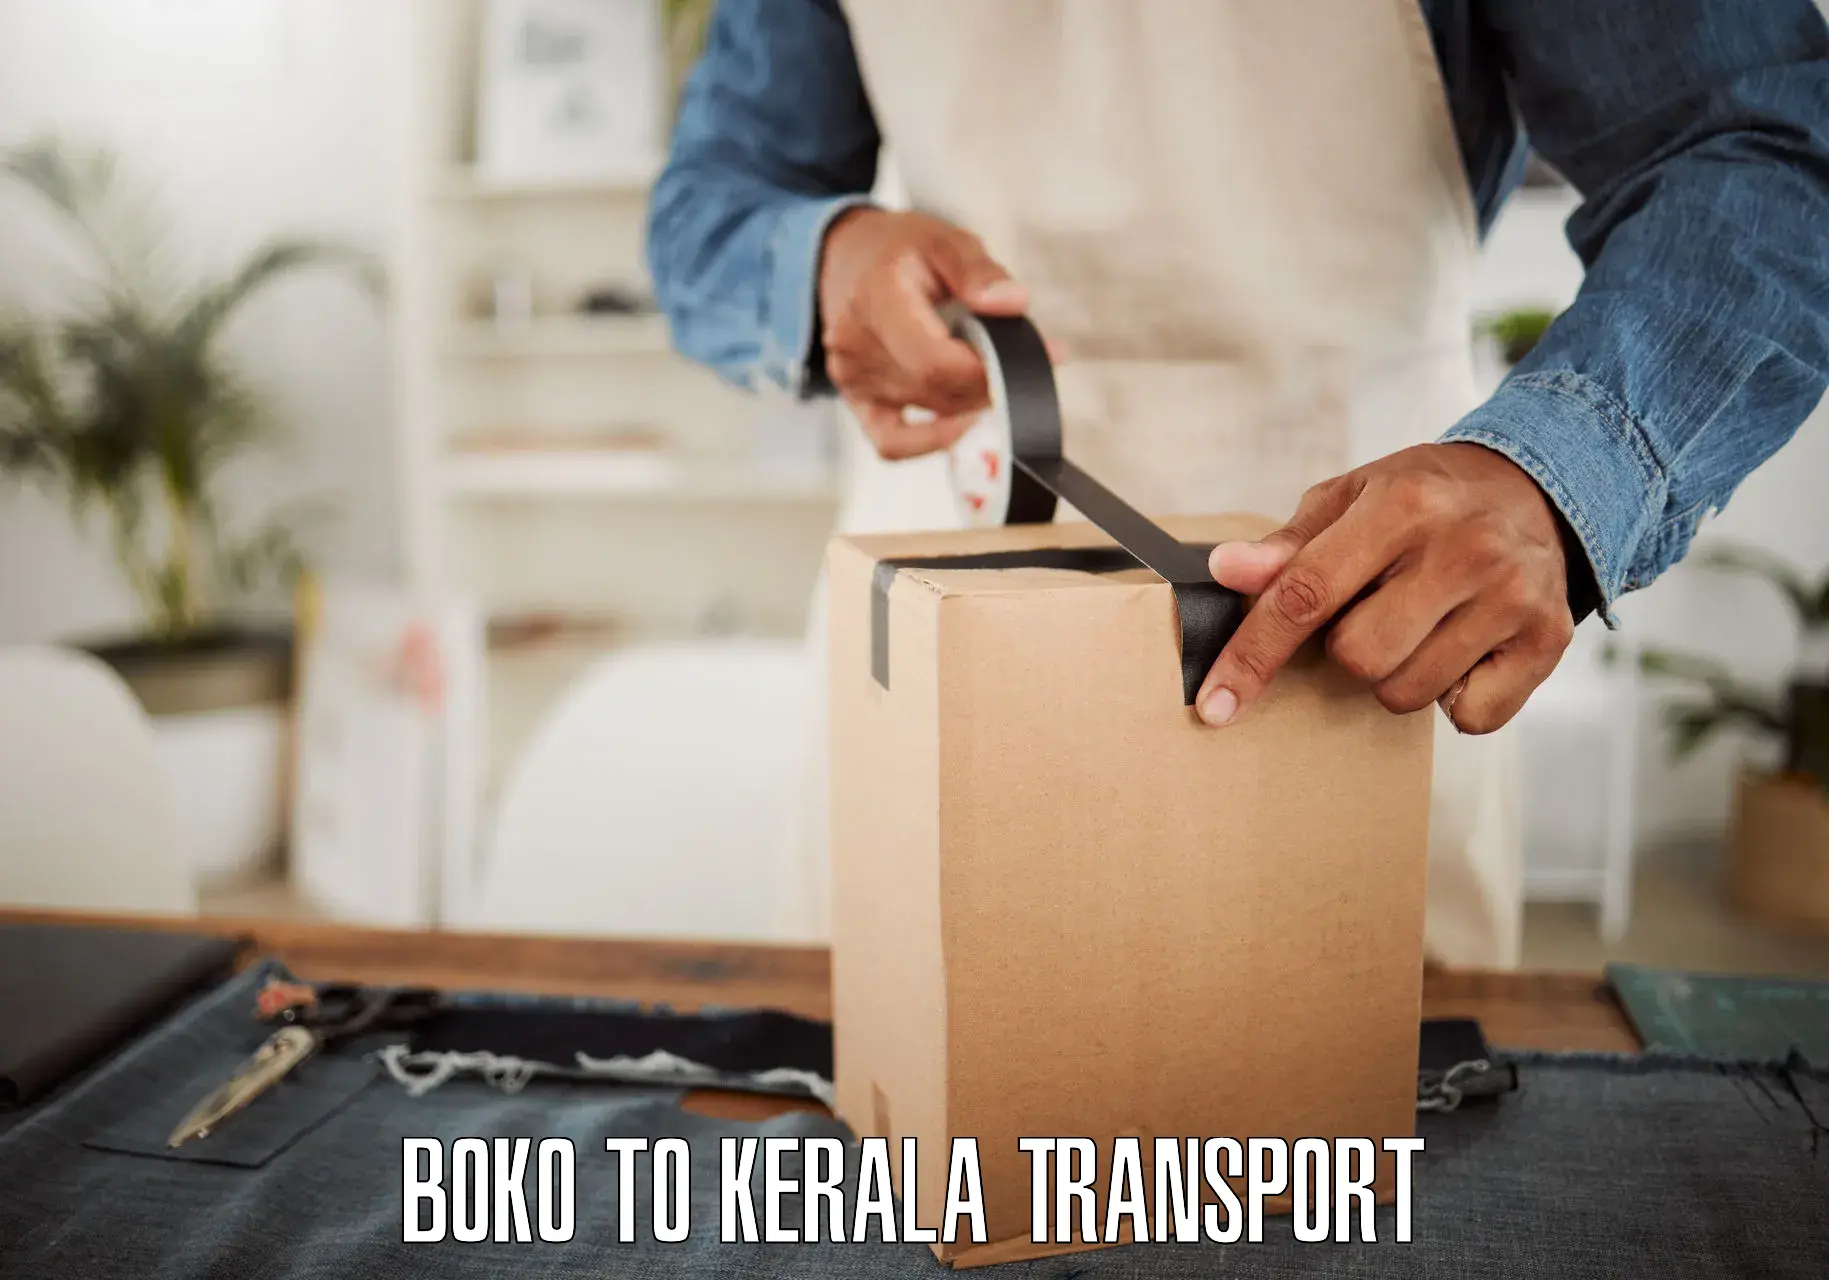 Furniture transport service Boko to Palai